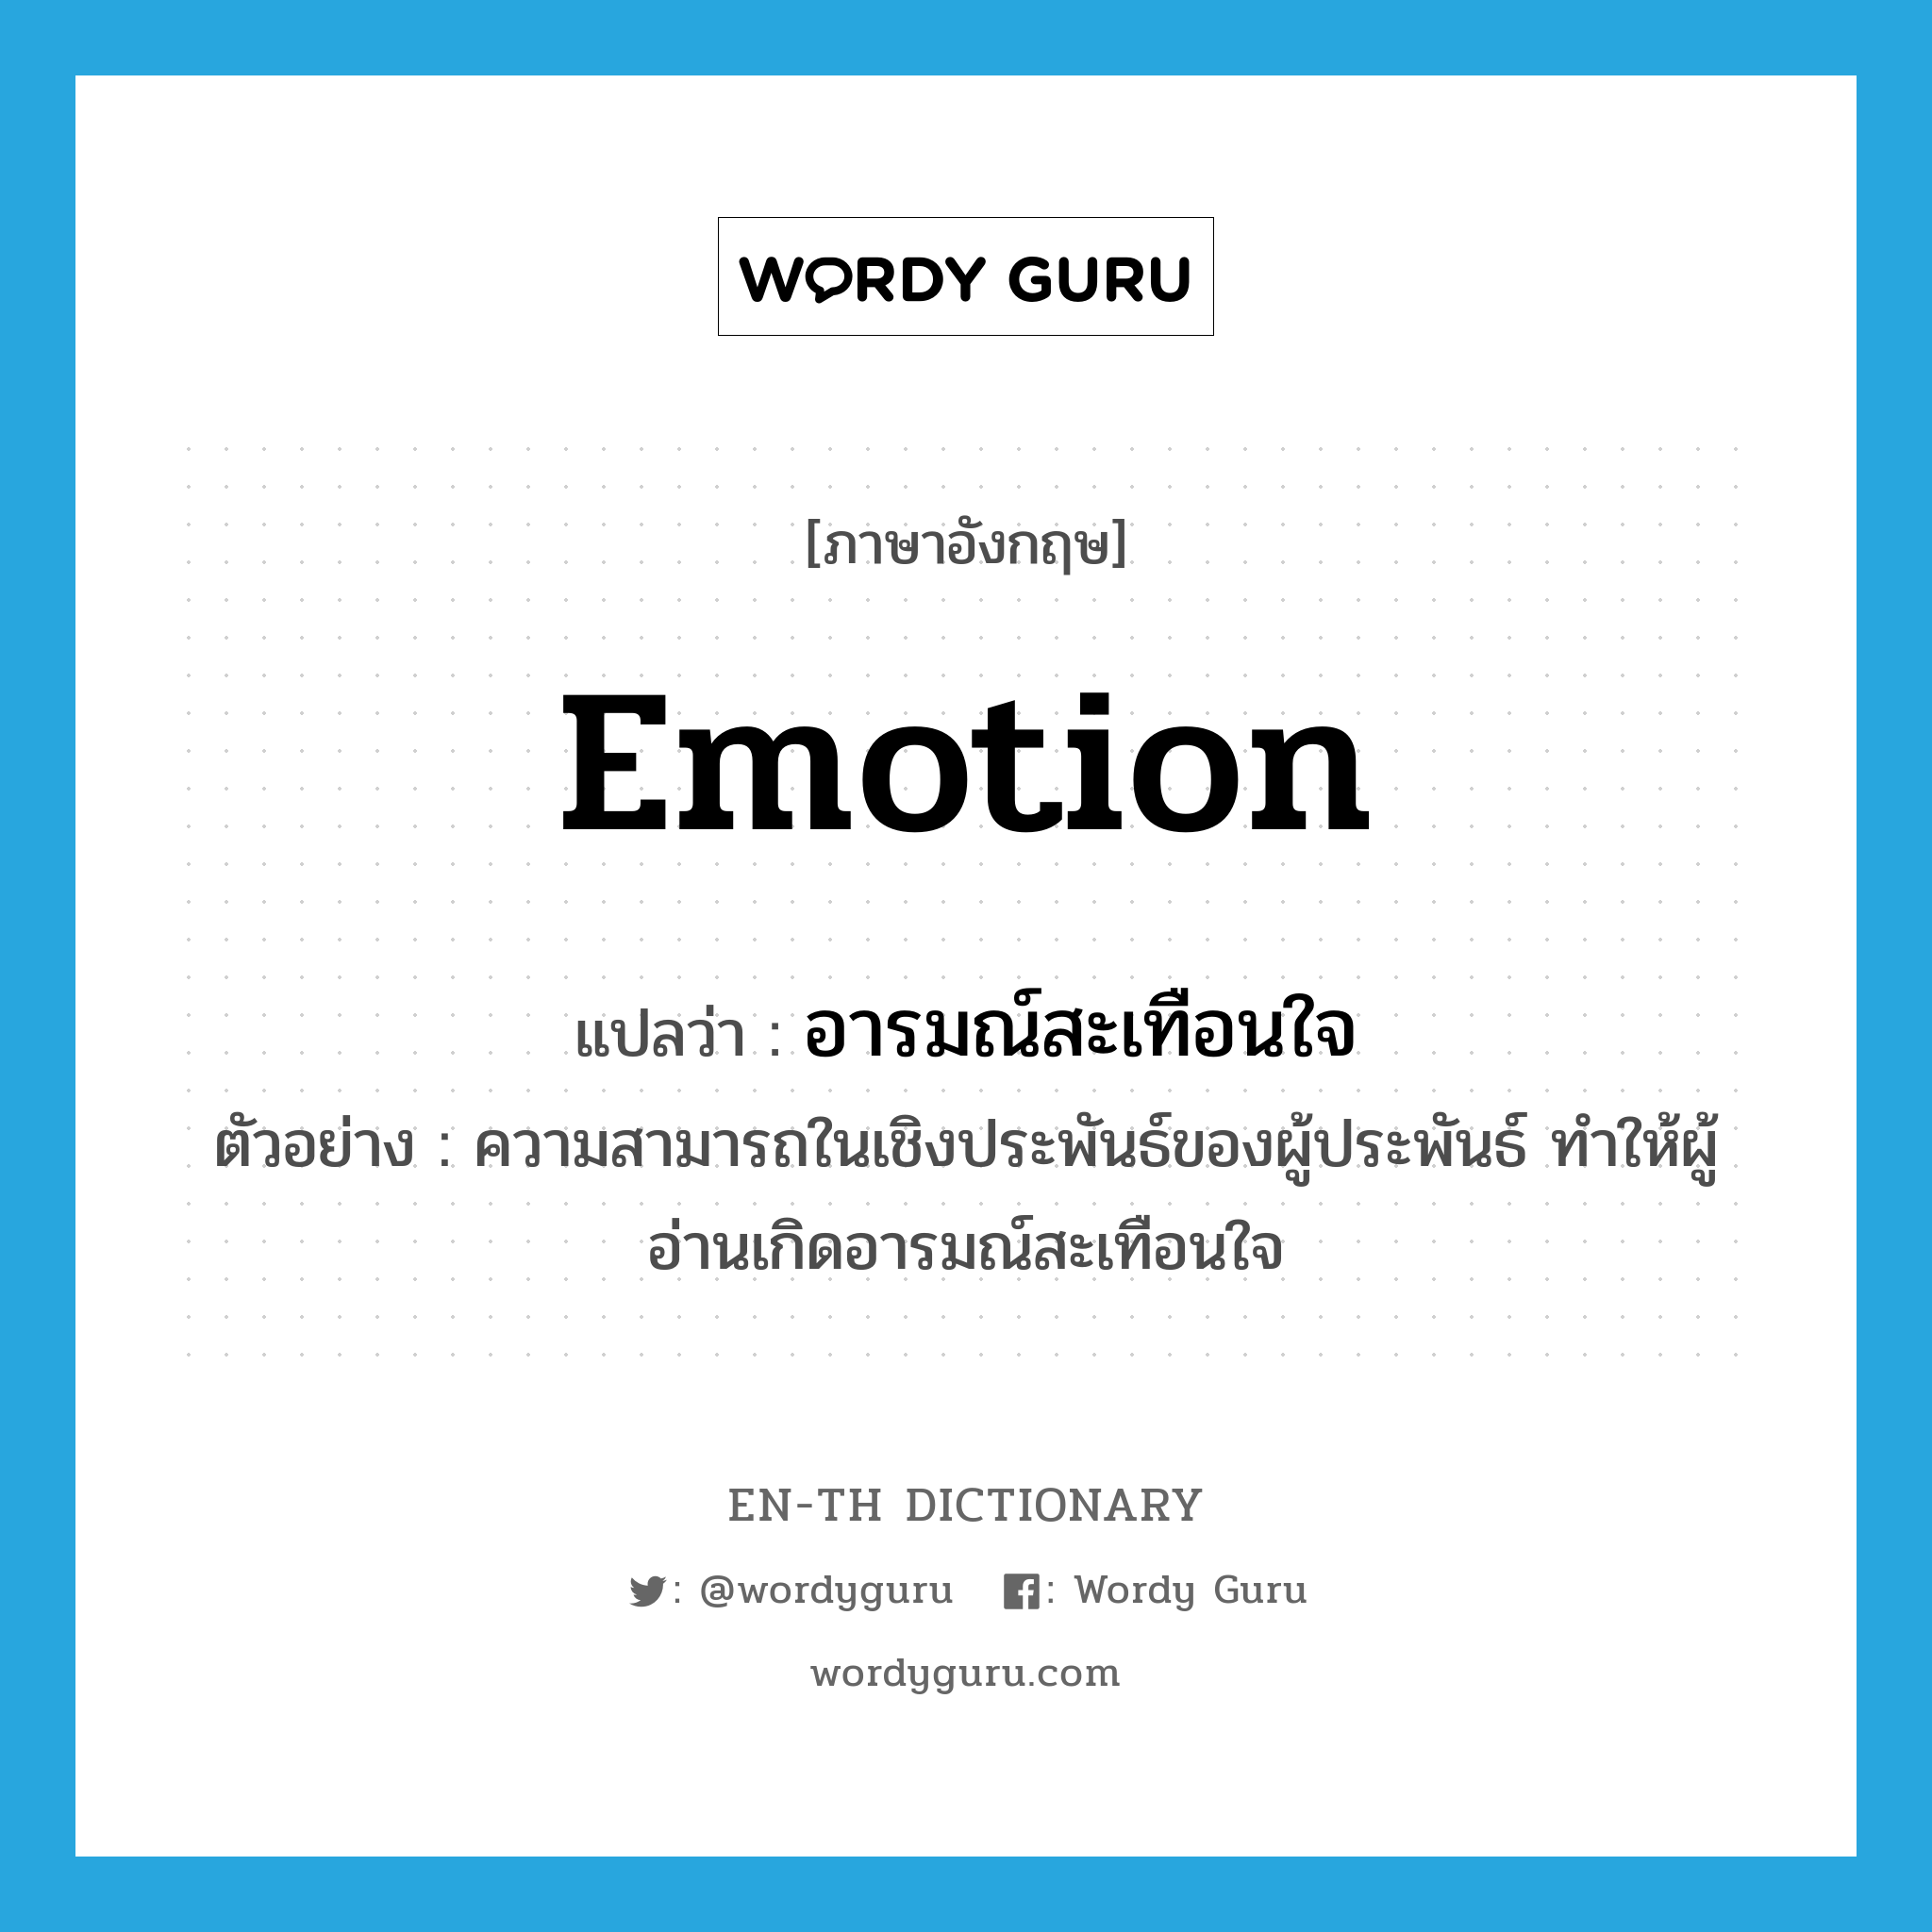 emotion แปลว่า?, คำศัพท์ภาษาอังกฤษ emotion แปลว่า อารมณ์สะเทือนใจ ประเภท N ตัวอย่าง ความสามารถในเชิงประพันธ์ของผู้ประพันธ์ ทำให้ผู้อ่านเกิดอารมณ์สะเทือนใจ หมวด N